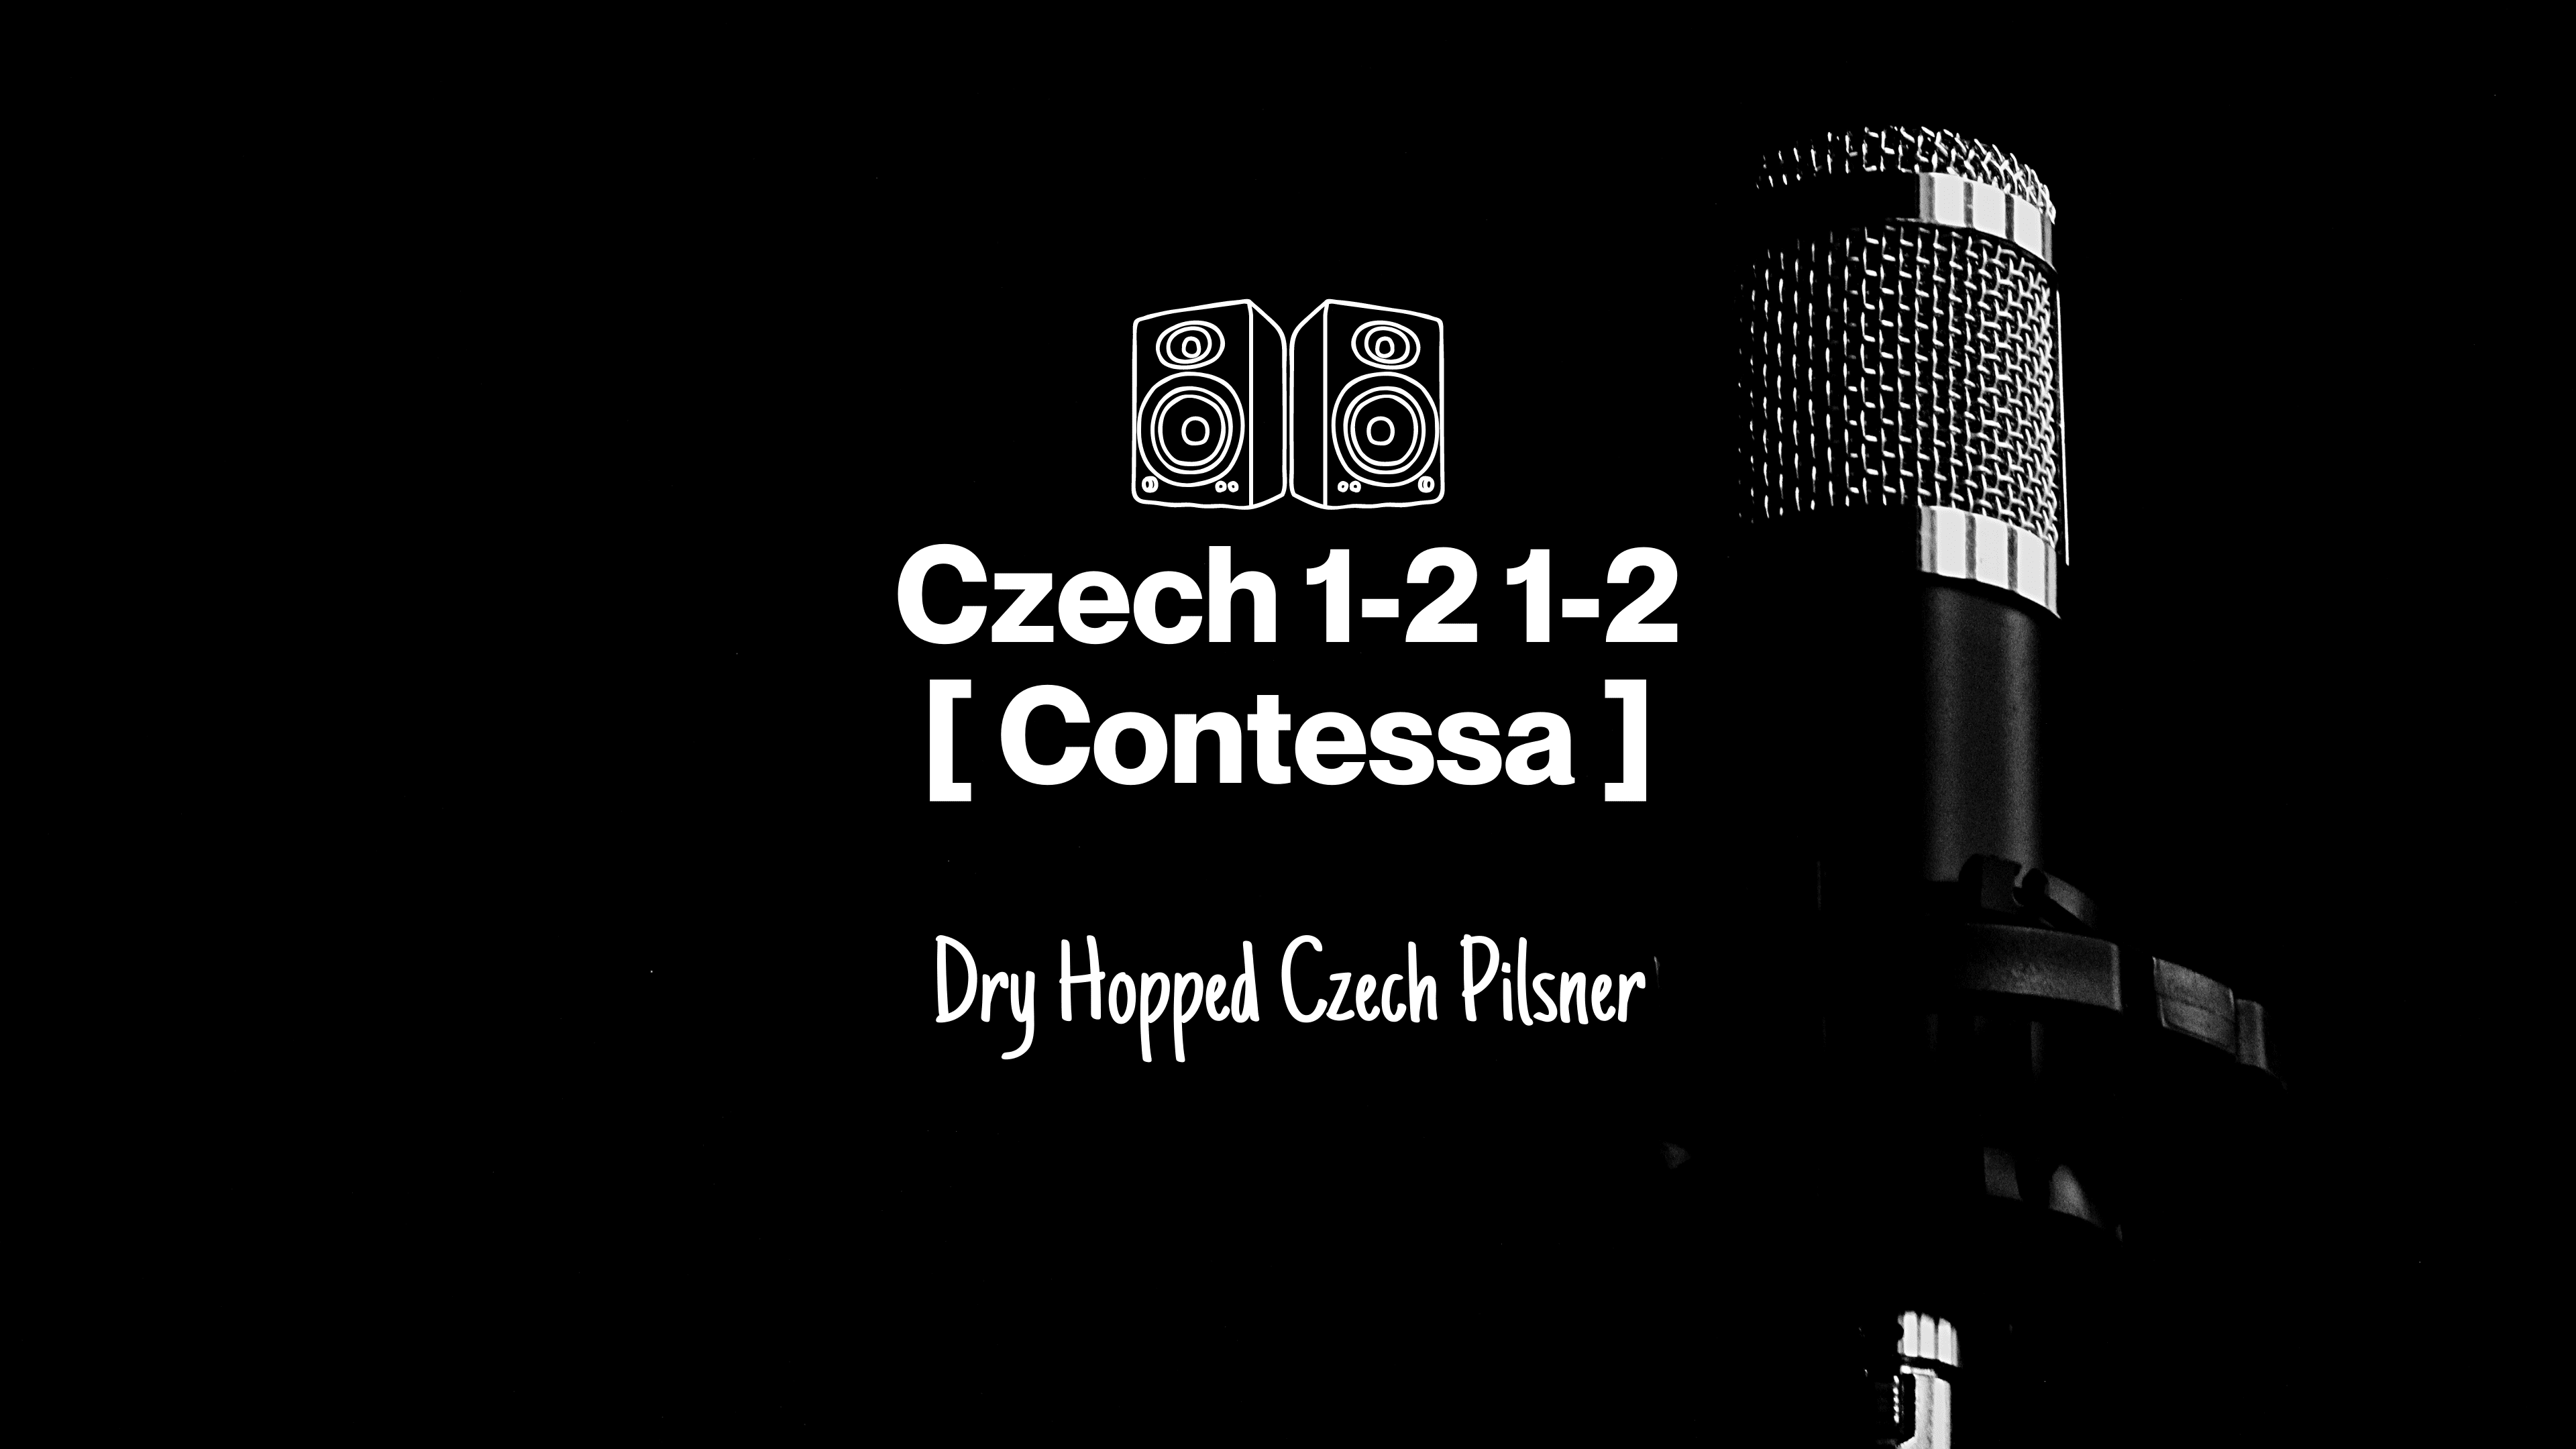 Czech 1-2-1-2 Contessa Dry Hopped Czech Pils Release